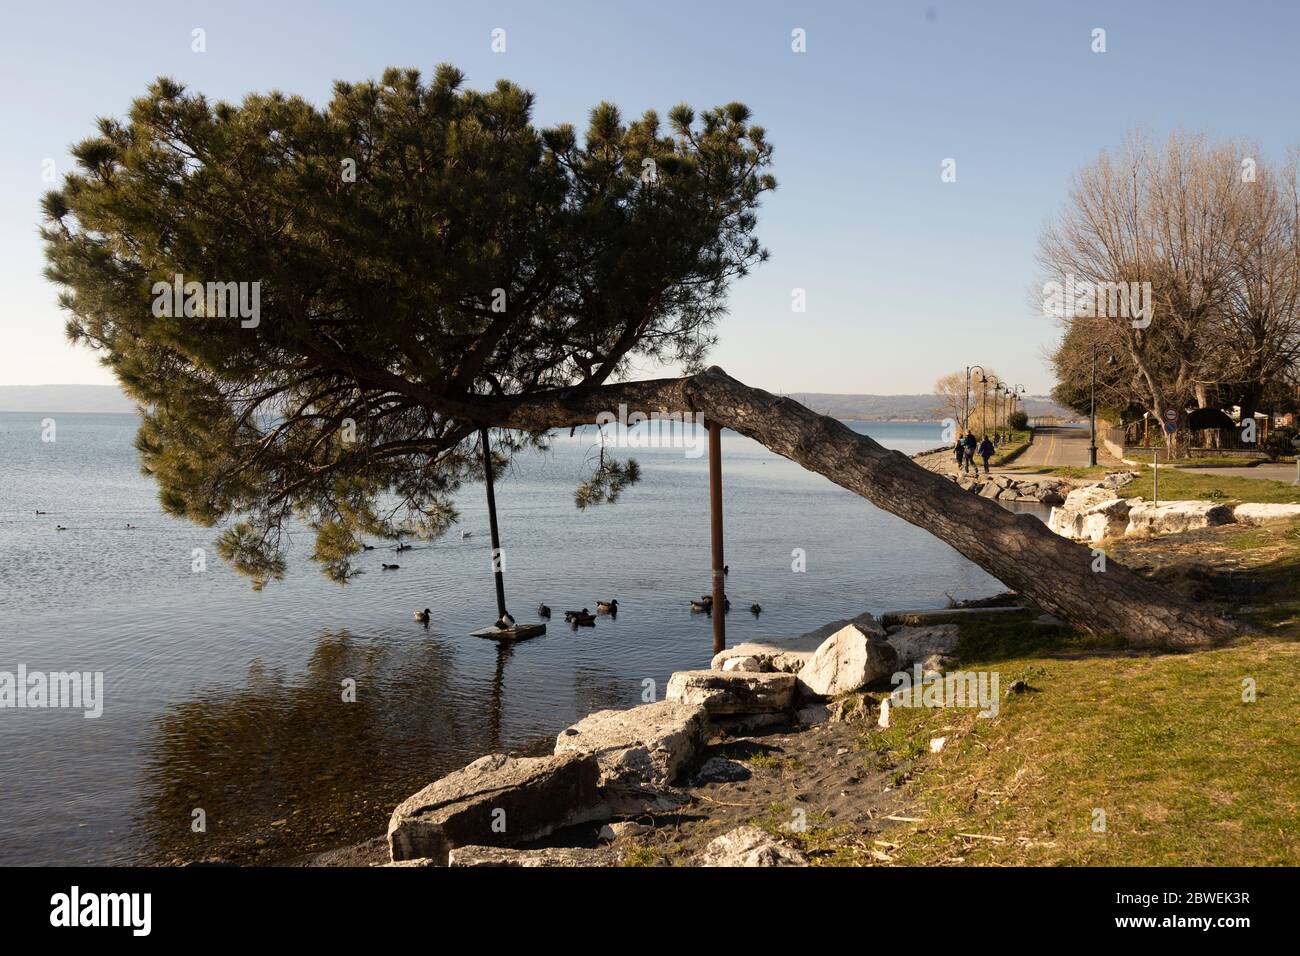 Baum, der horizontal auf dem See von Bolsena, Italien angebaut wird; um das Fallen des Baumes zu verhindern, wurden spezielle Stützen geschaffen Stockfoto